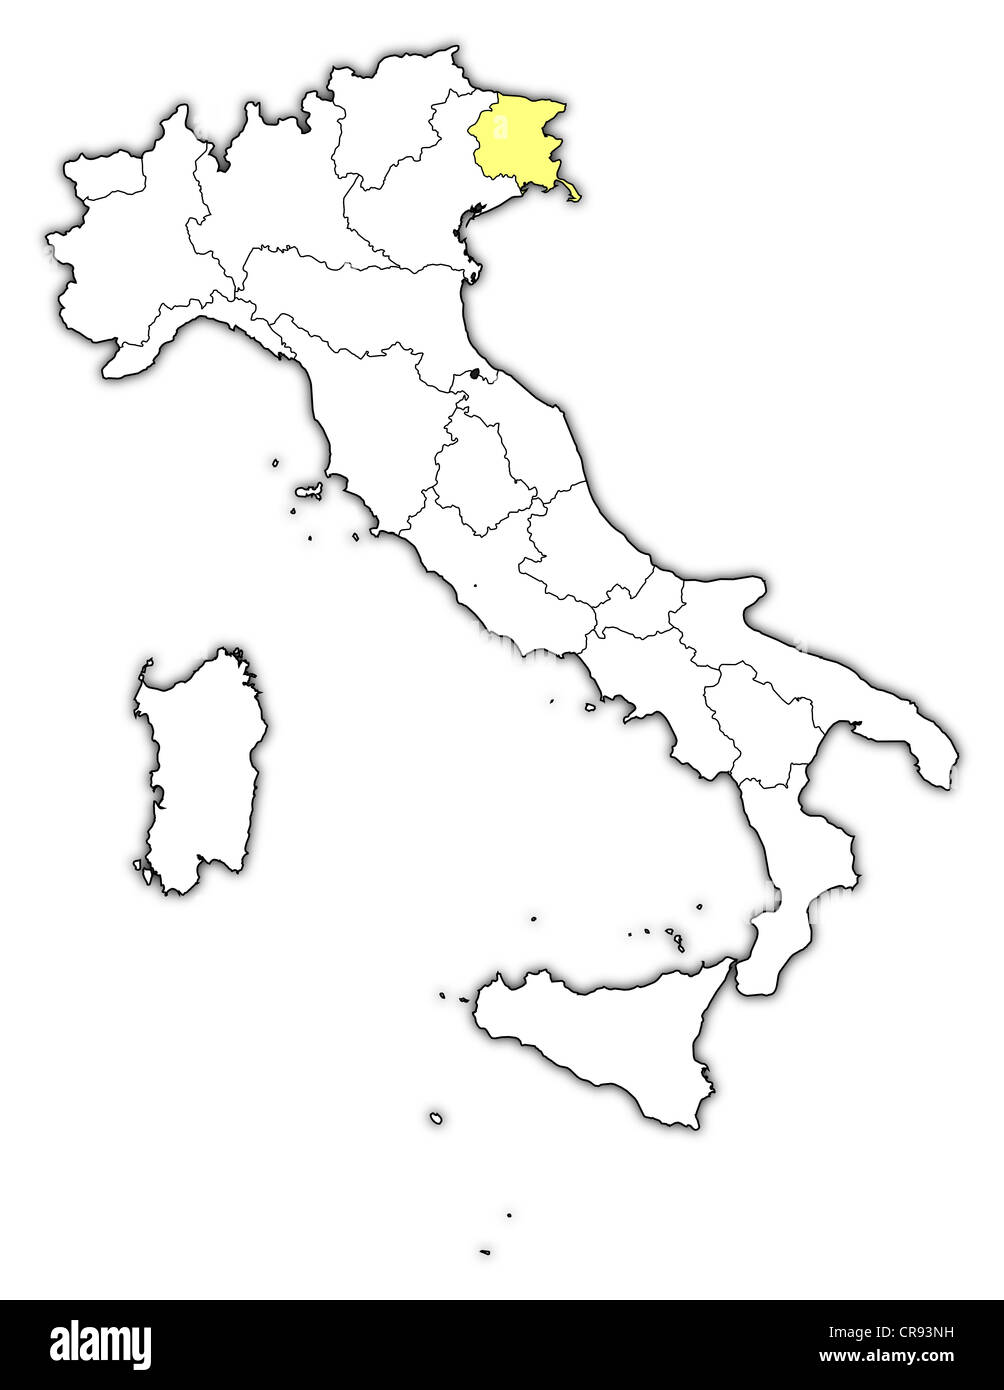 Mapa político de Italia con las varias regiones donde se resalta de Friuli-Venezia Giulia. Foto de stock